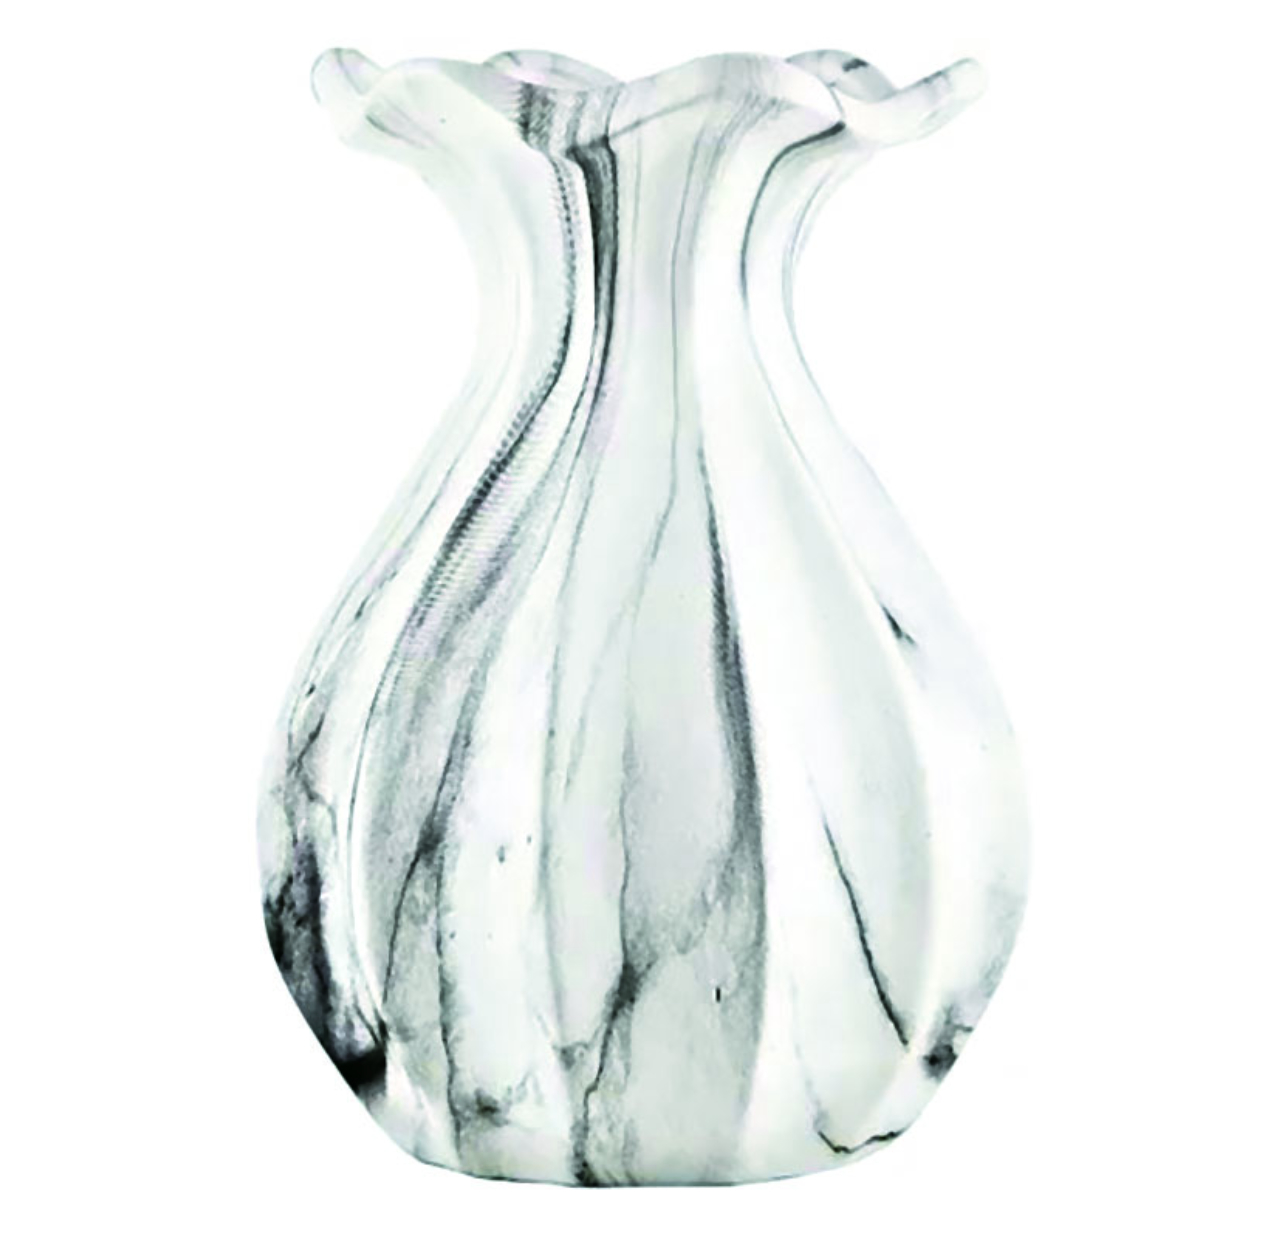 Vaso em cerâmica com<br>efeito mármore. Preço<br>R$54 na Bergerson<br>Presentes.